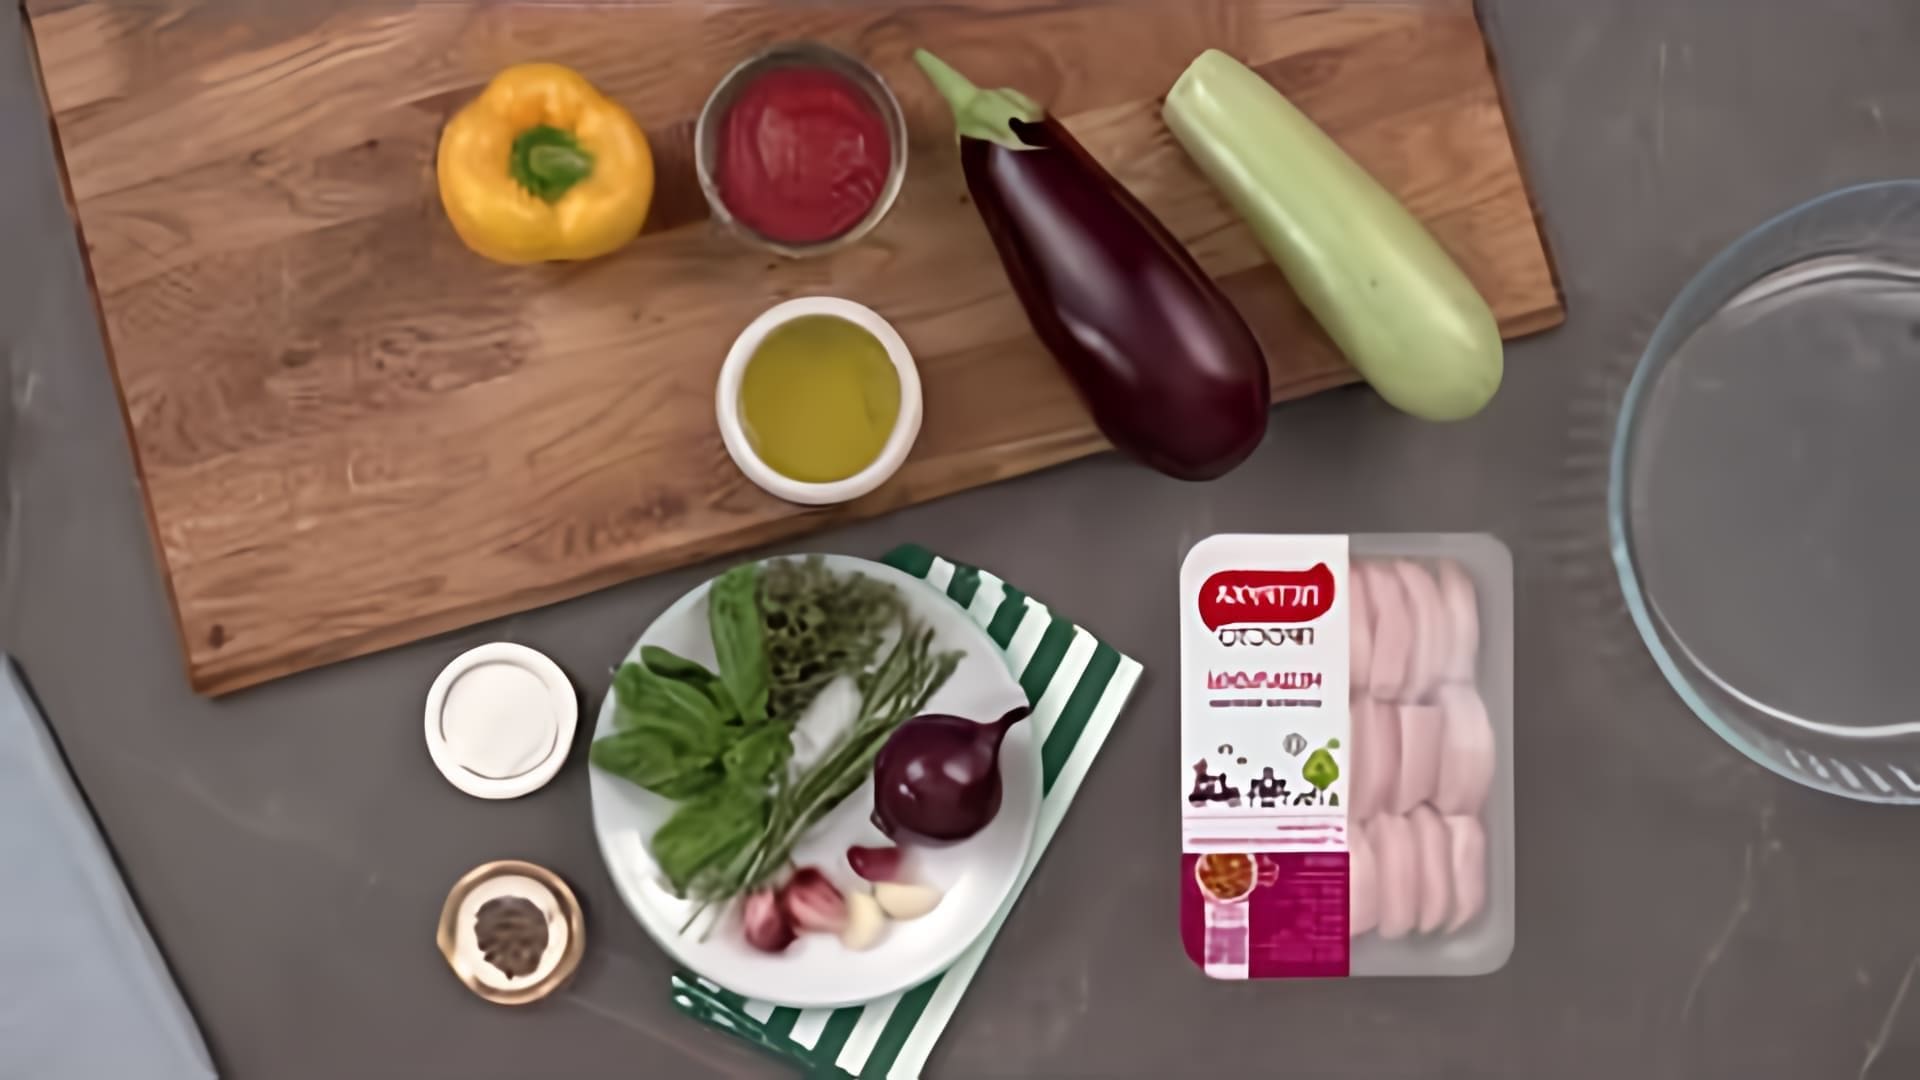 "Рататуй из курицы: быстрые рецепты" - это видео-ролик, который демонстрирует несколько простых и быстрых рецептов приготовления рататуя с использованием курицы